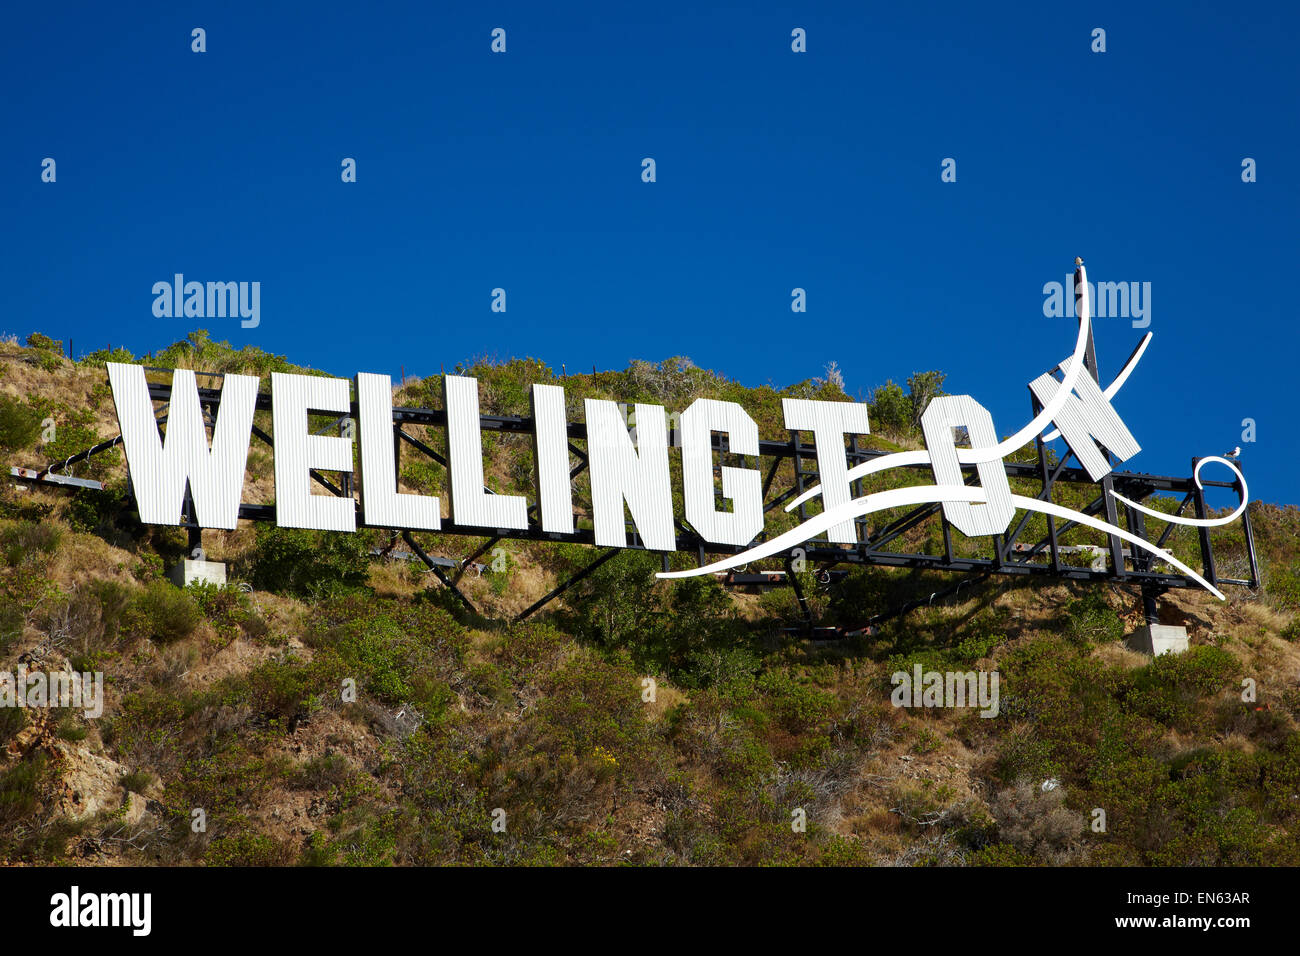 Wellington venteuse, signe de la baie Lyall, à côté de l'Aéroport International de Wellington, Wellington, Île du Nord, Nouvelle-Zélande Banque D'Images